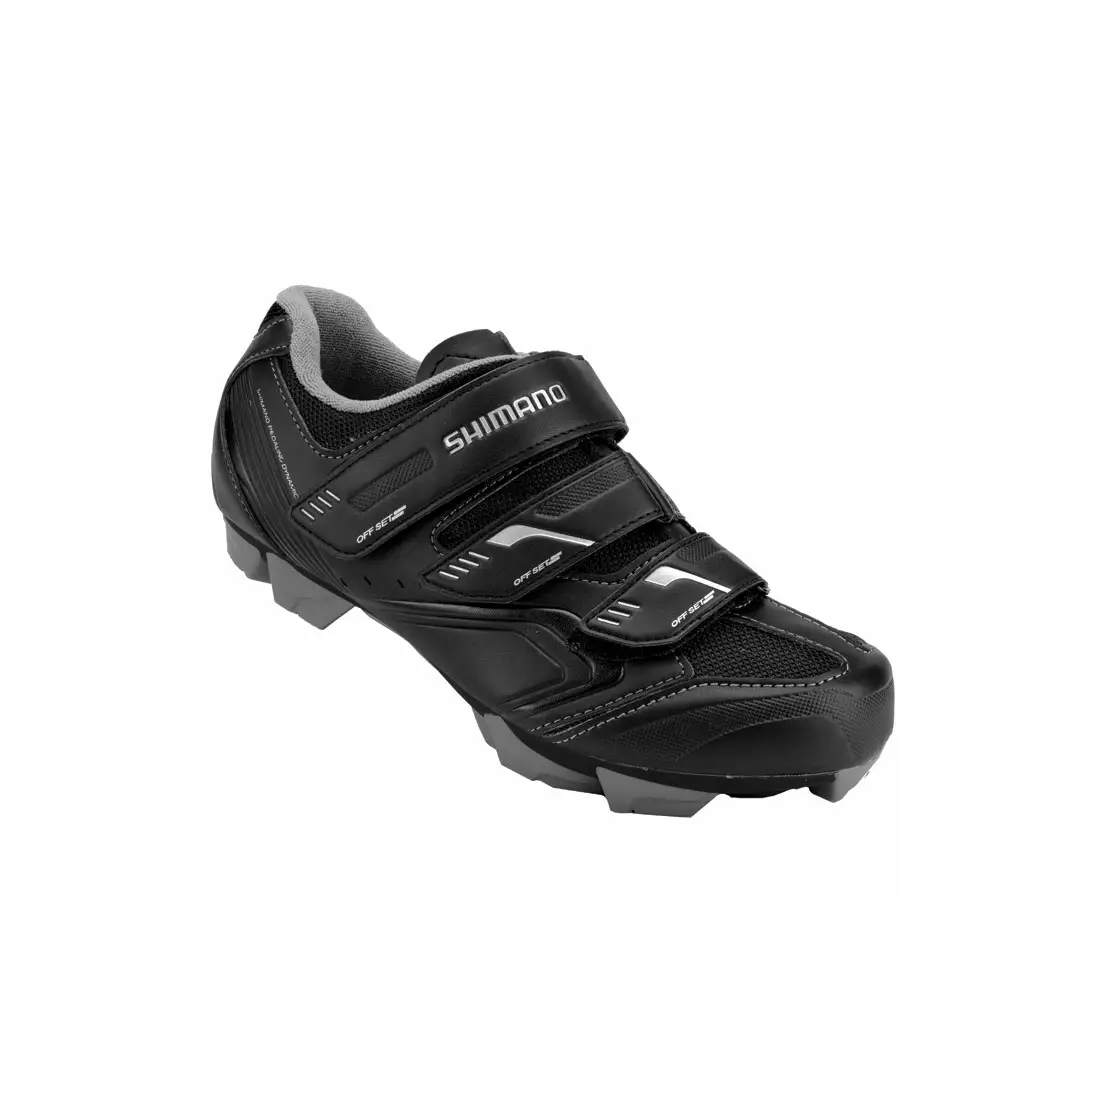 SHIMANO SH-WM52 - women's cycling shoes, color: black